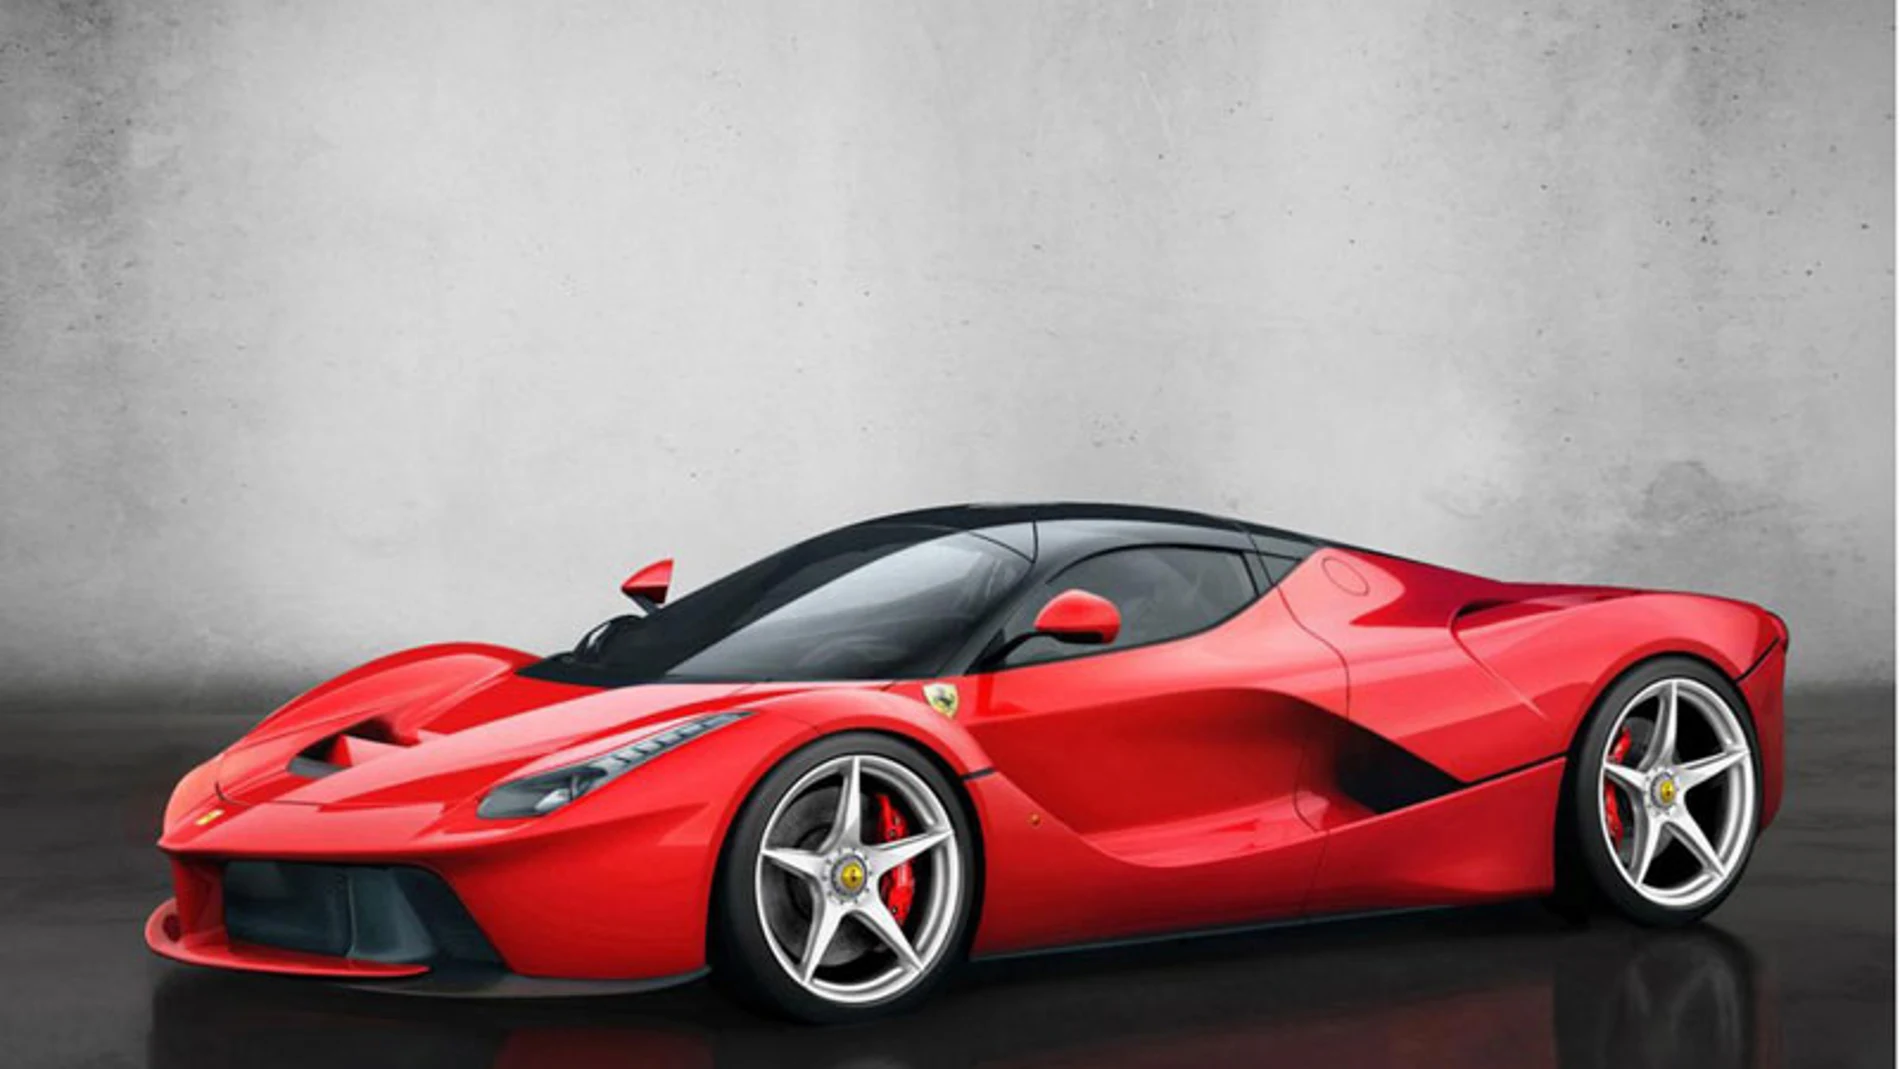 El nuevo modelo de Ferrari es un deportivo híbrido con una línea espectacular.